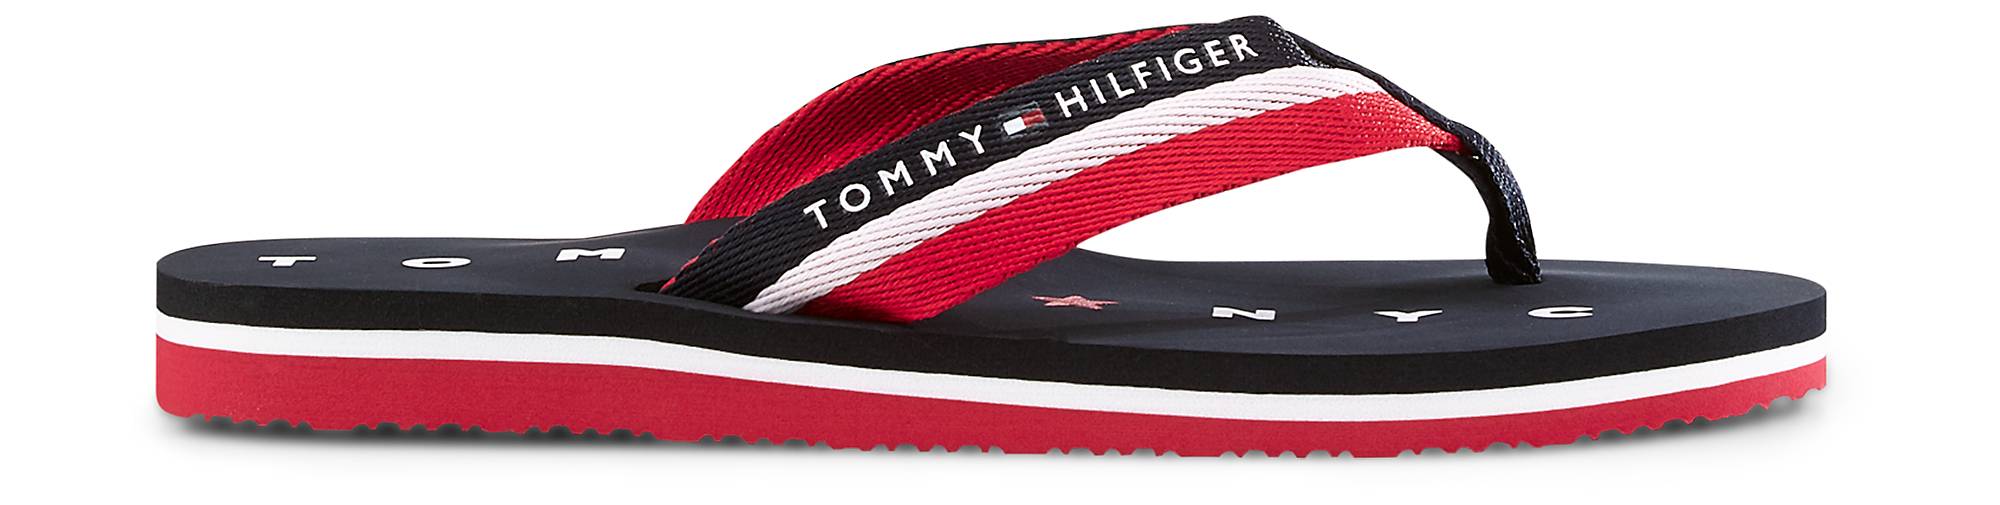 Tommy Hilfiger Synthetik Sandale in Weiß Damen Schuhe Flache Schuhe Zehentrenner und Badelatschen 